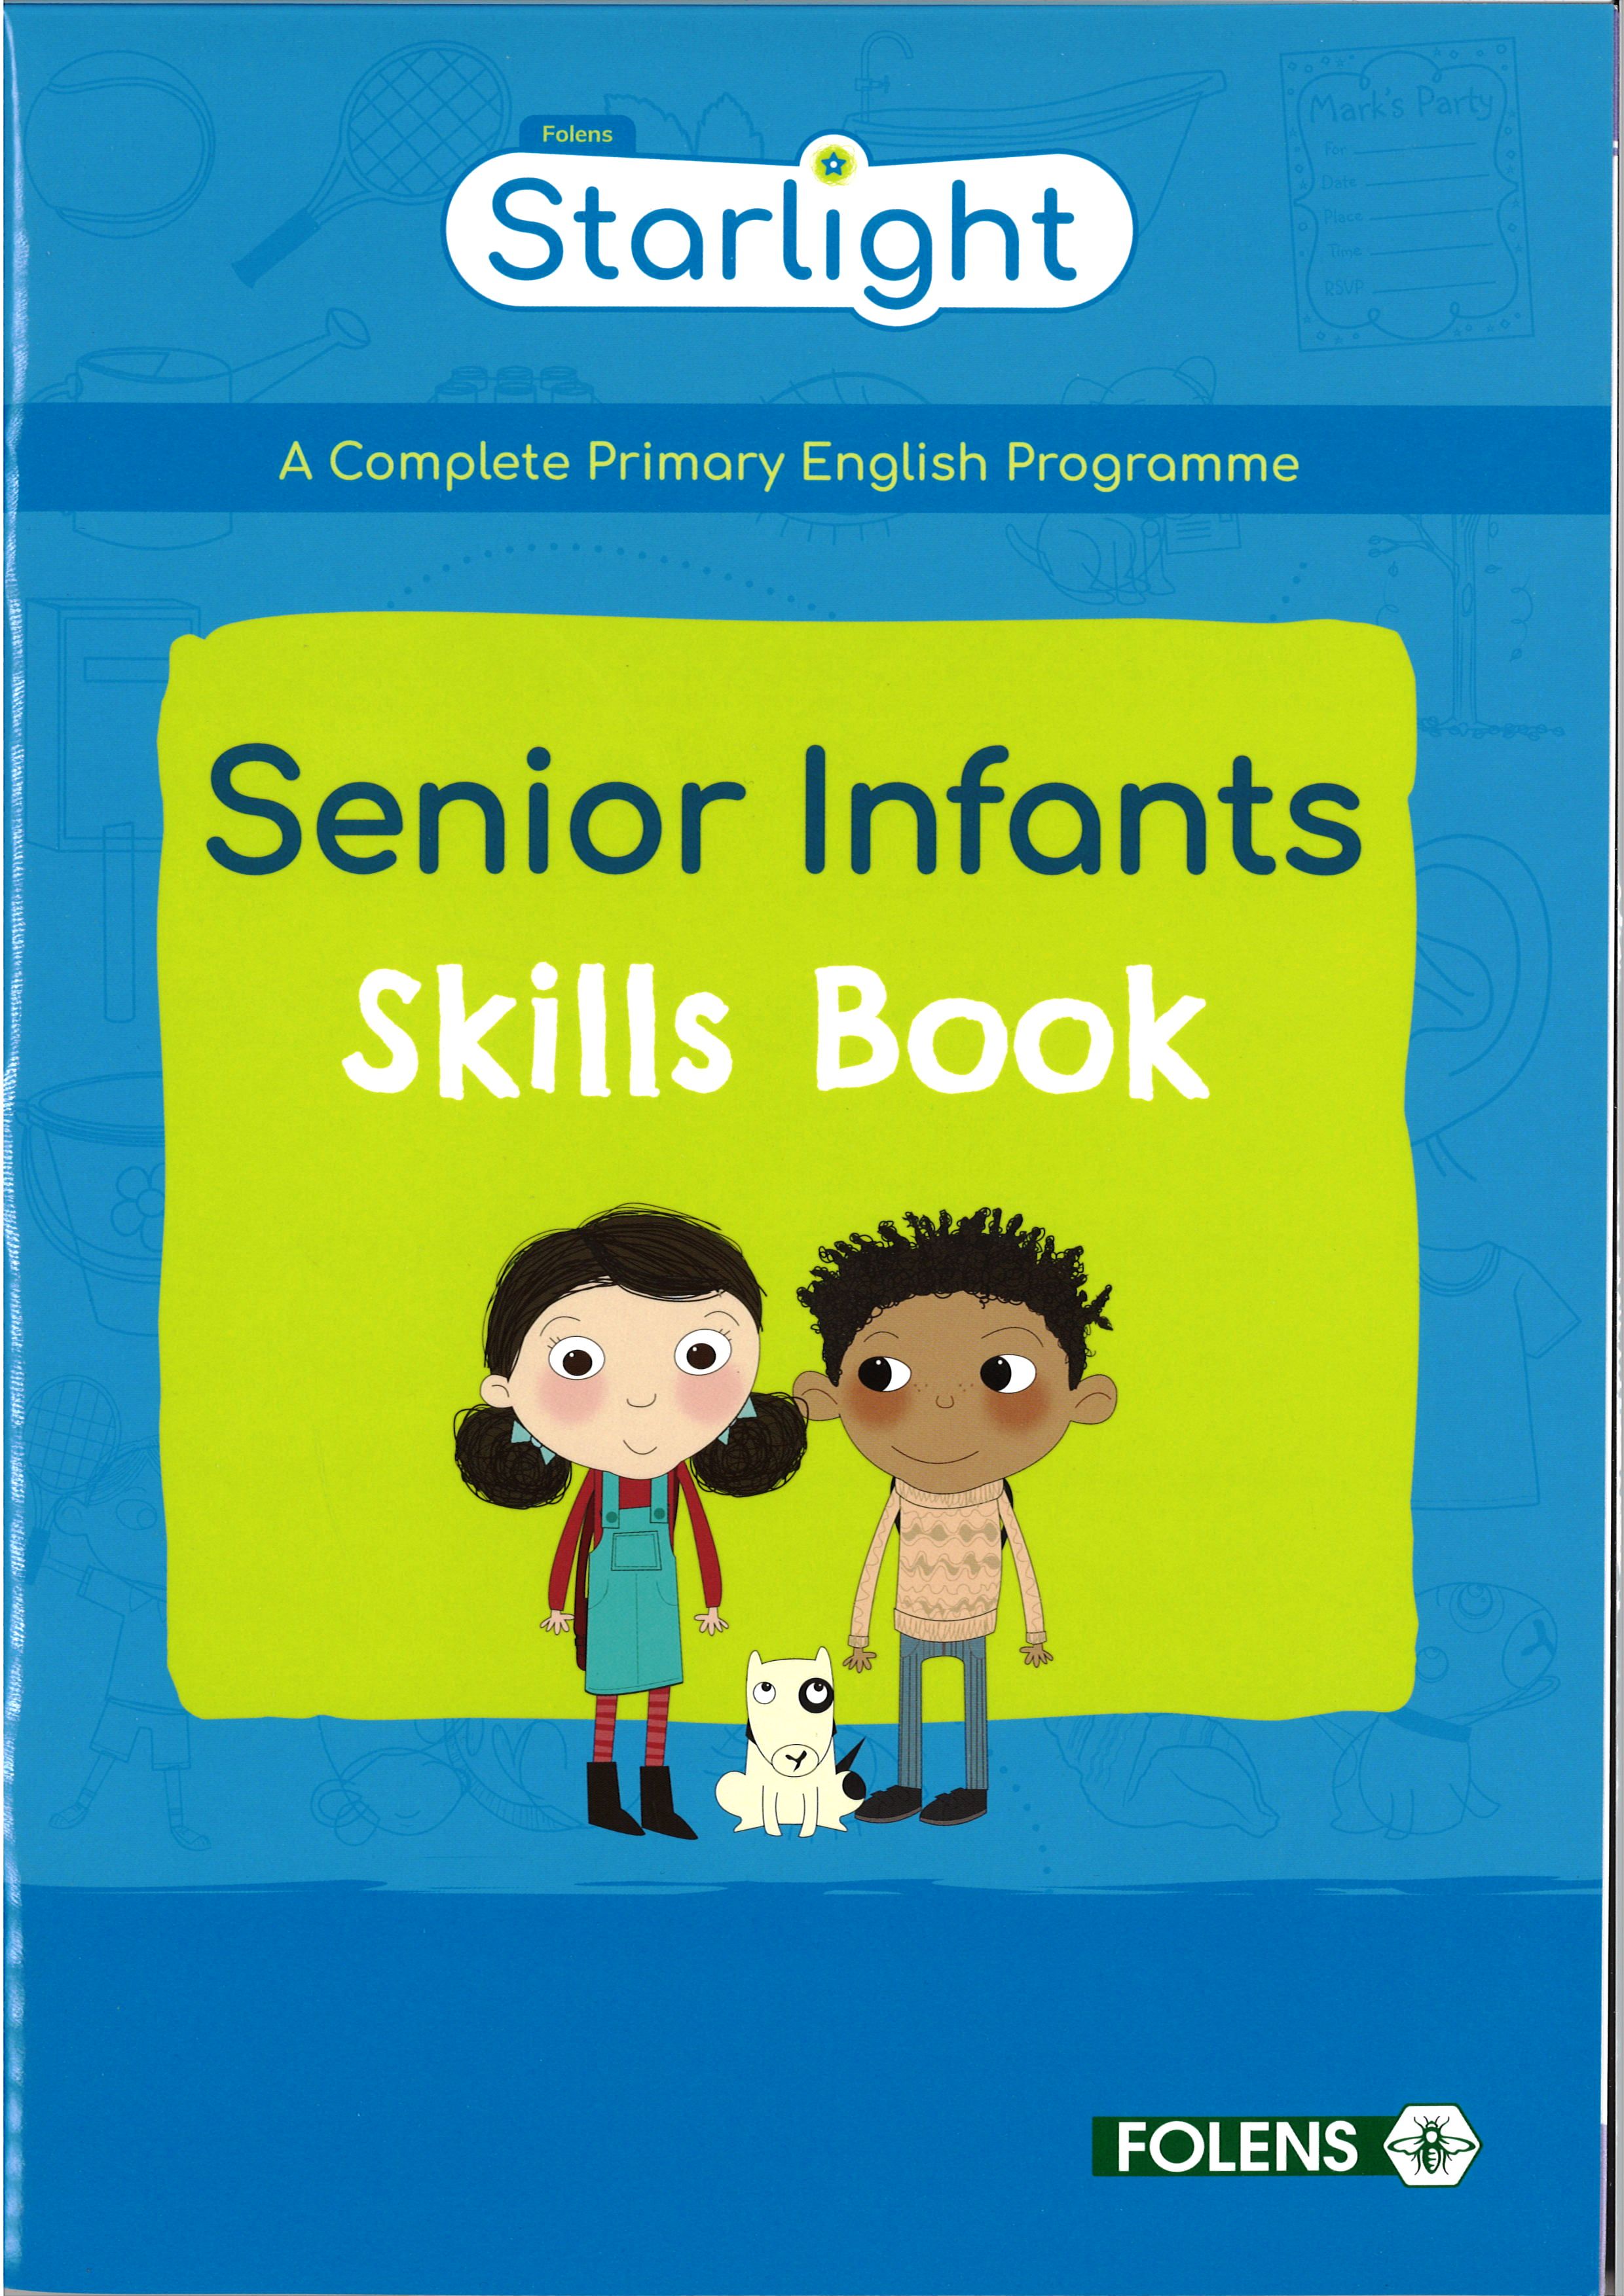 homework for senior infants